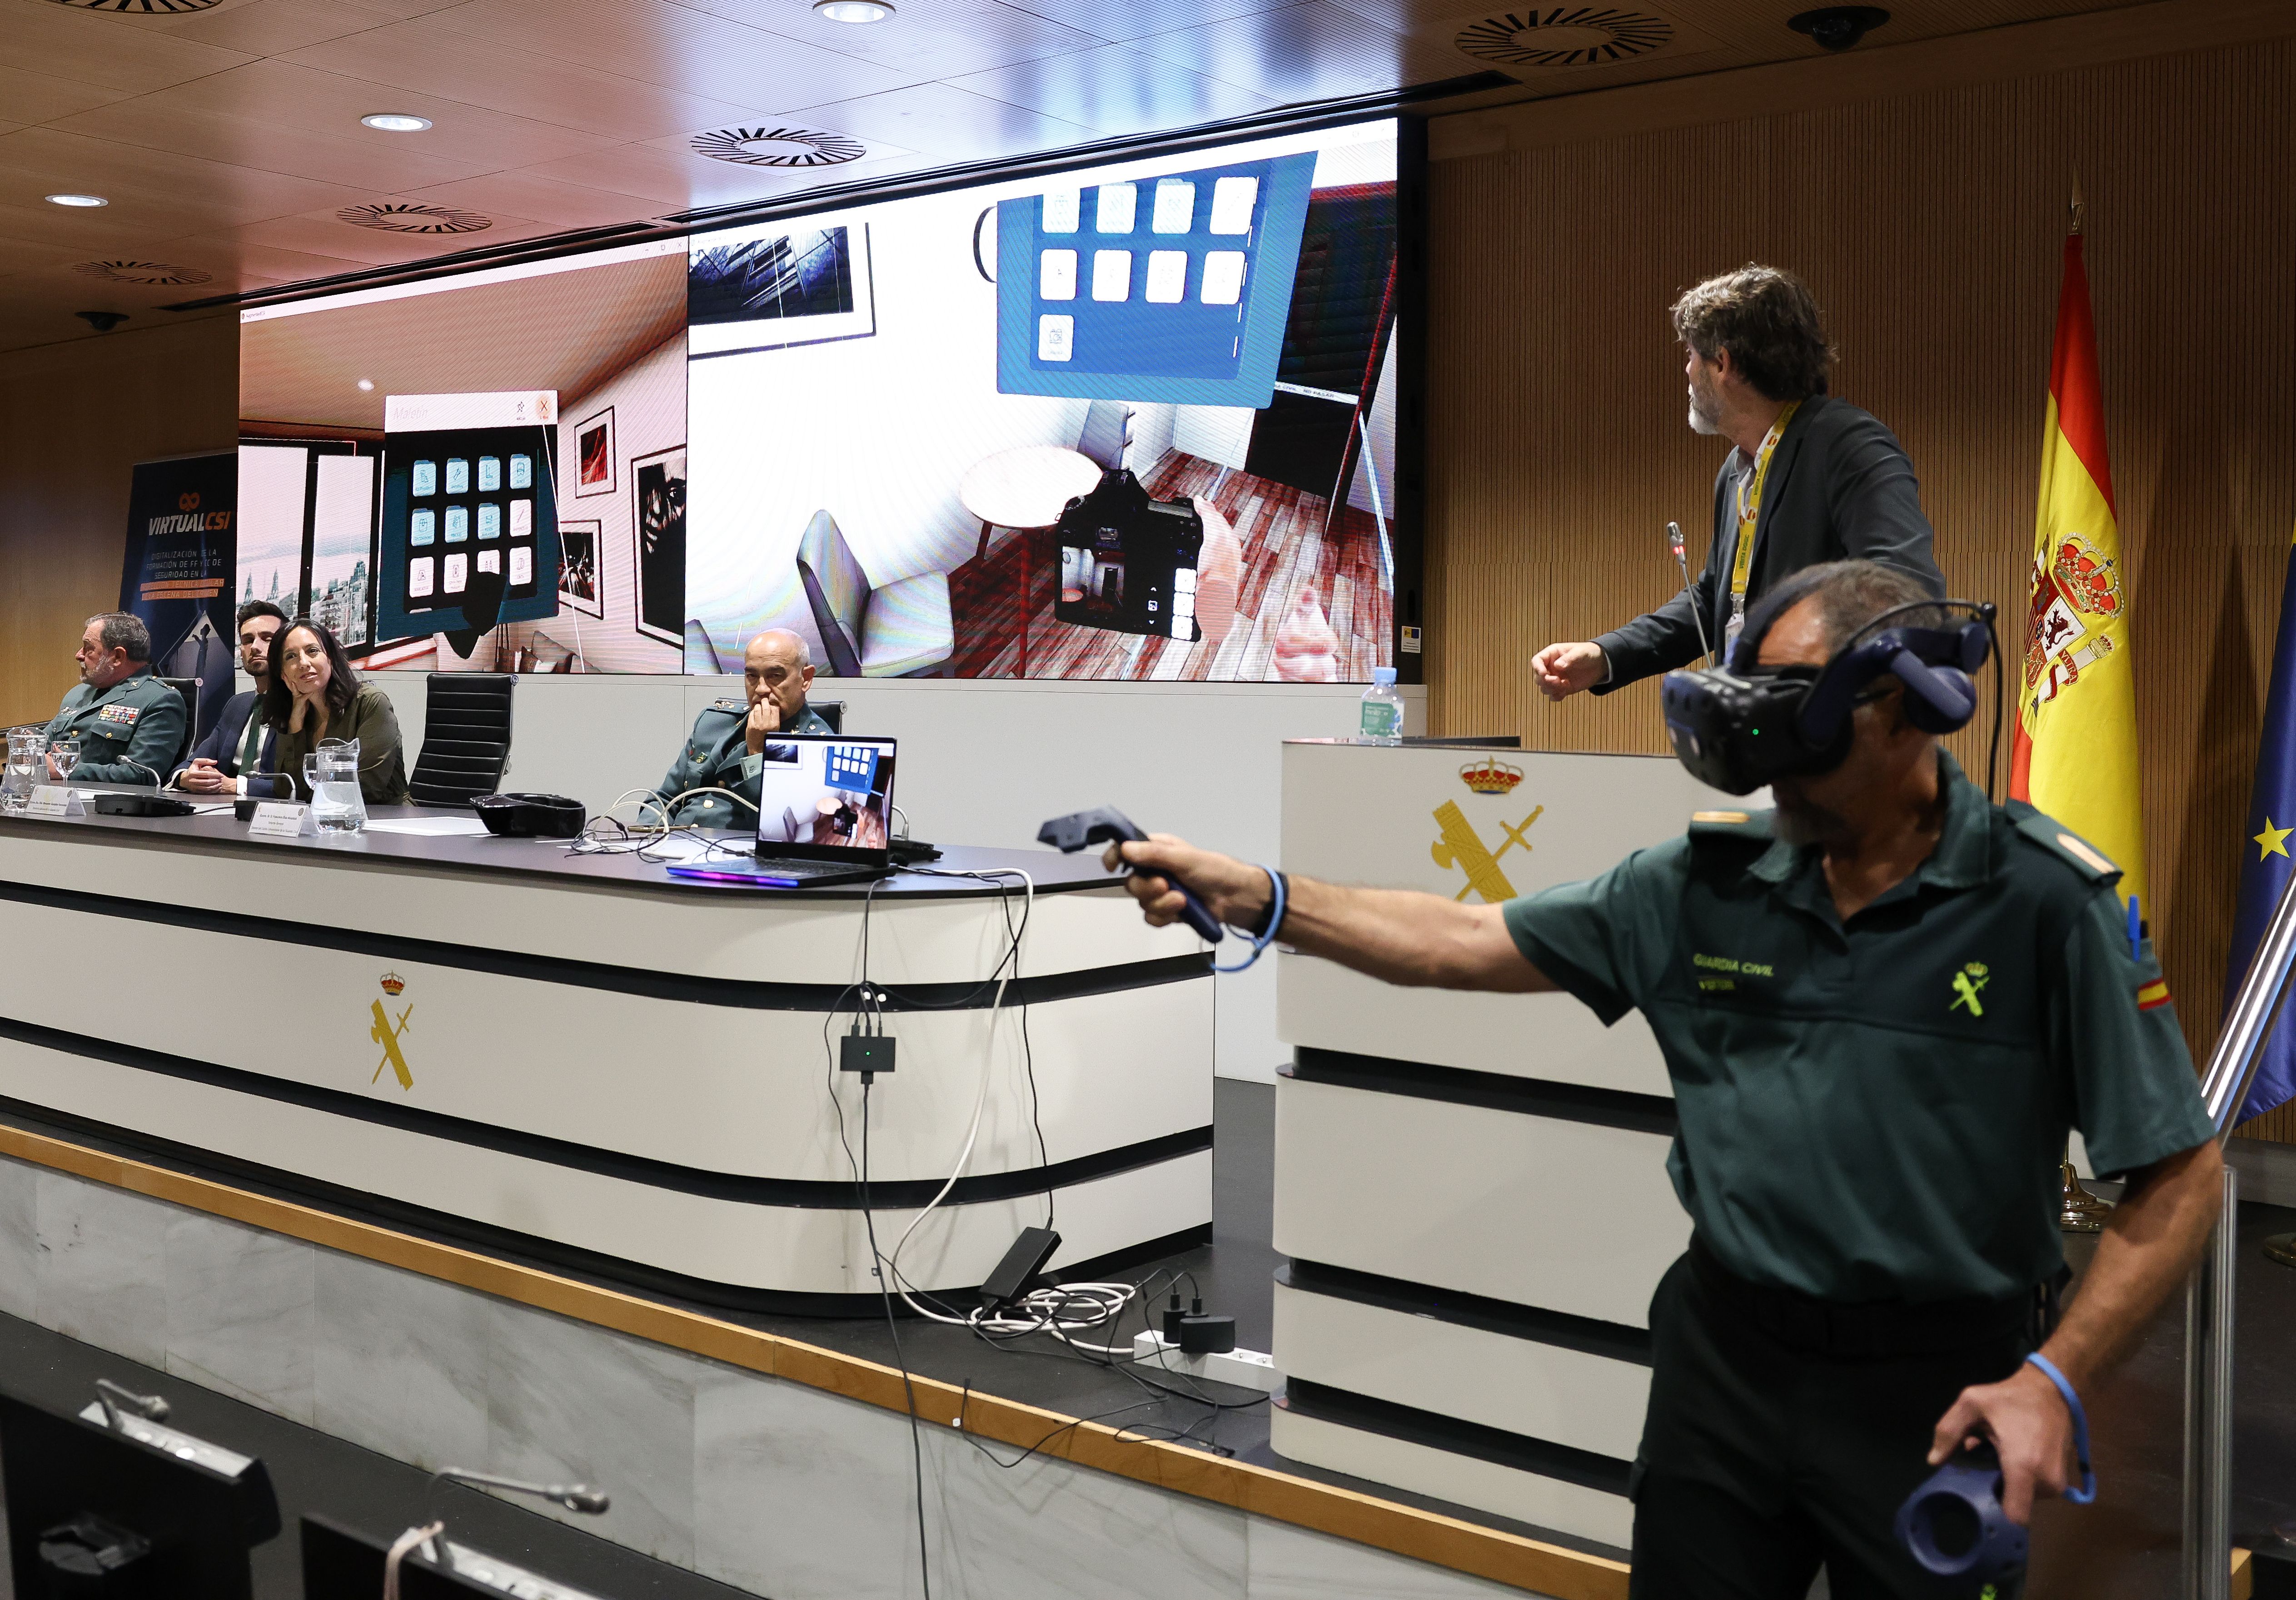 La Guardia Civil comienza a formarse con un simulador que recrea virtualmente escenas de un crimen